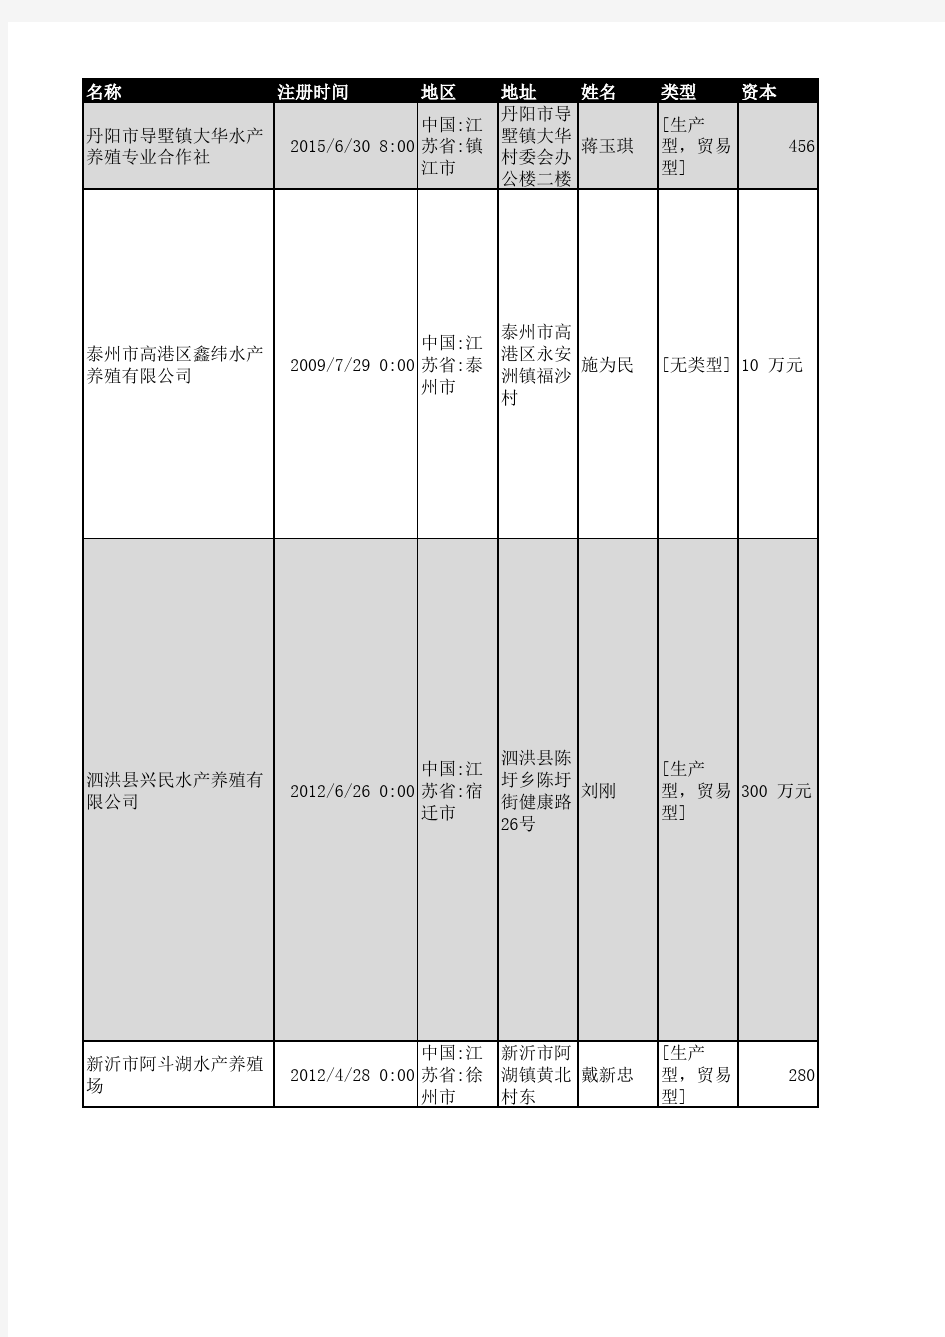 2018年江苏省水产养殖企业名录1294家